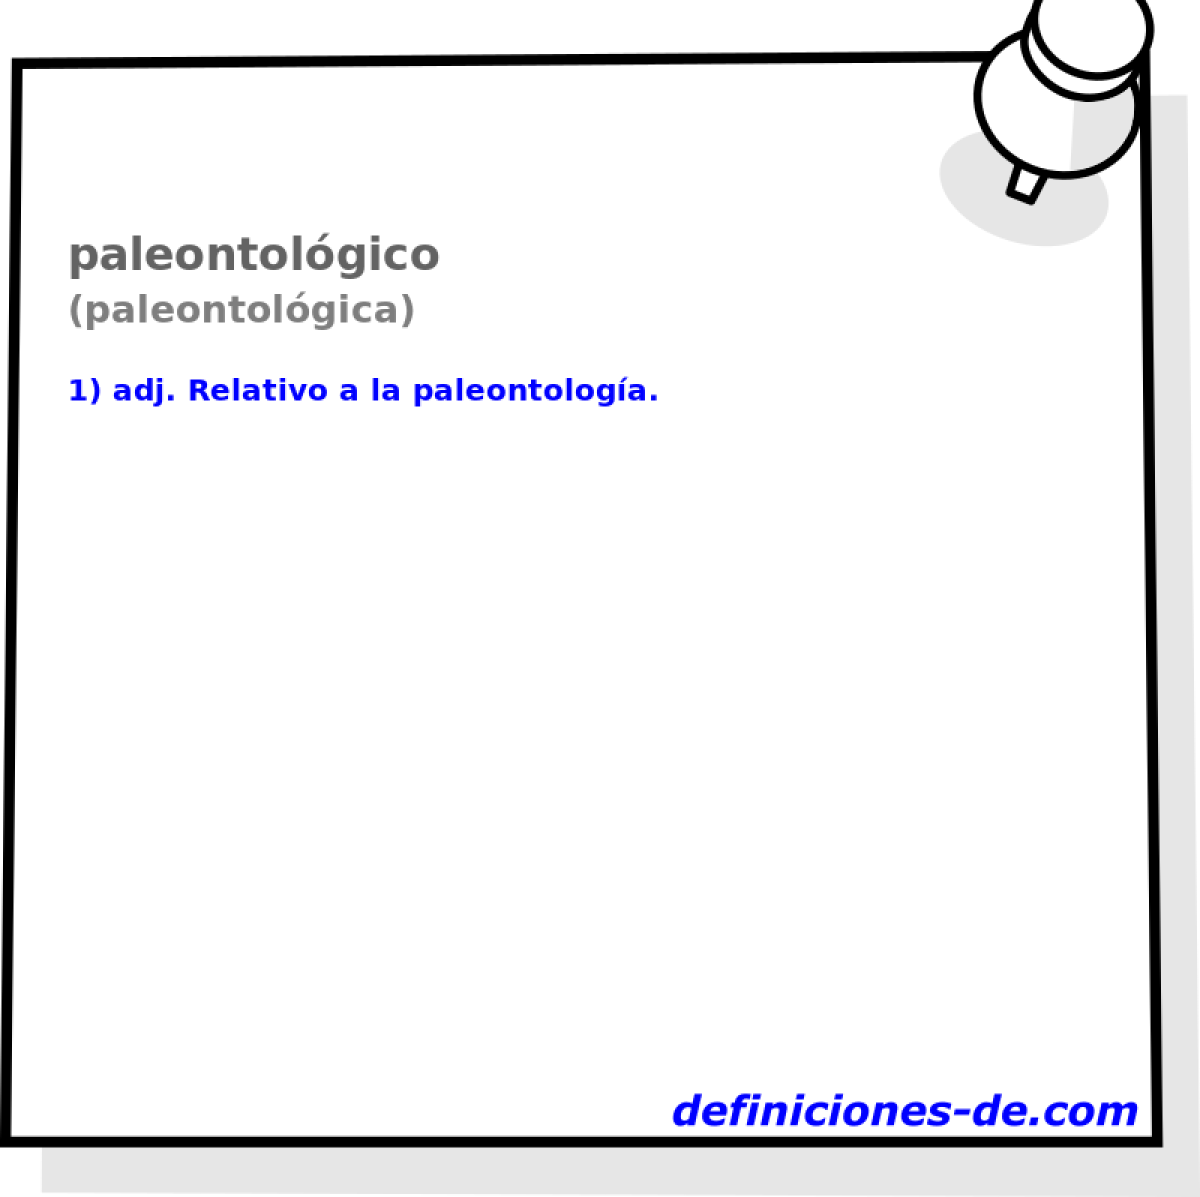 paleontolgico (paleontolgica)